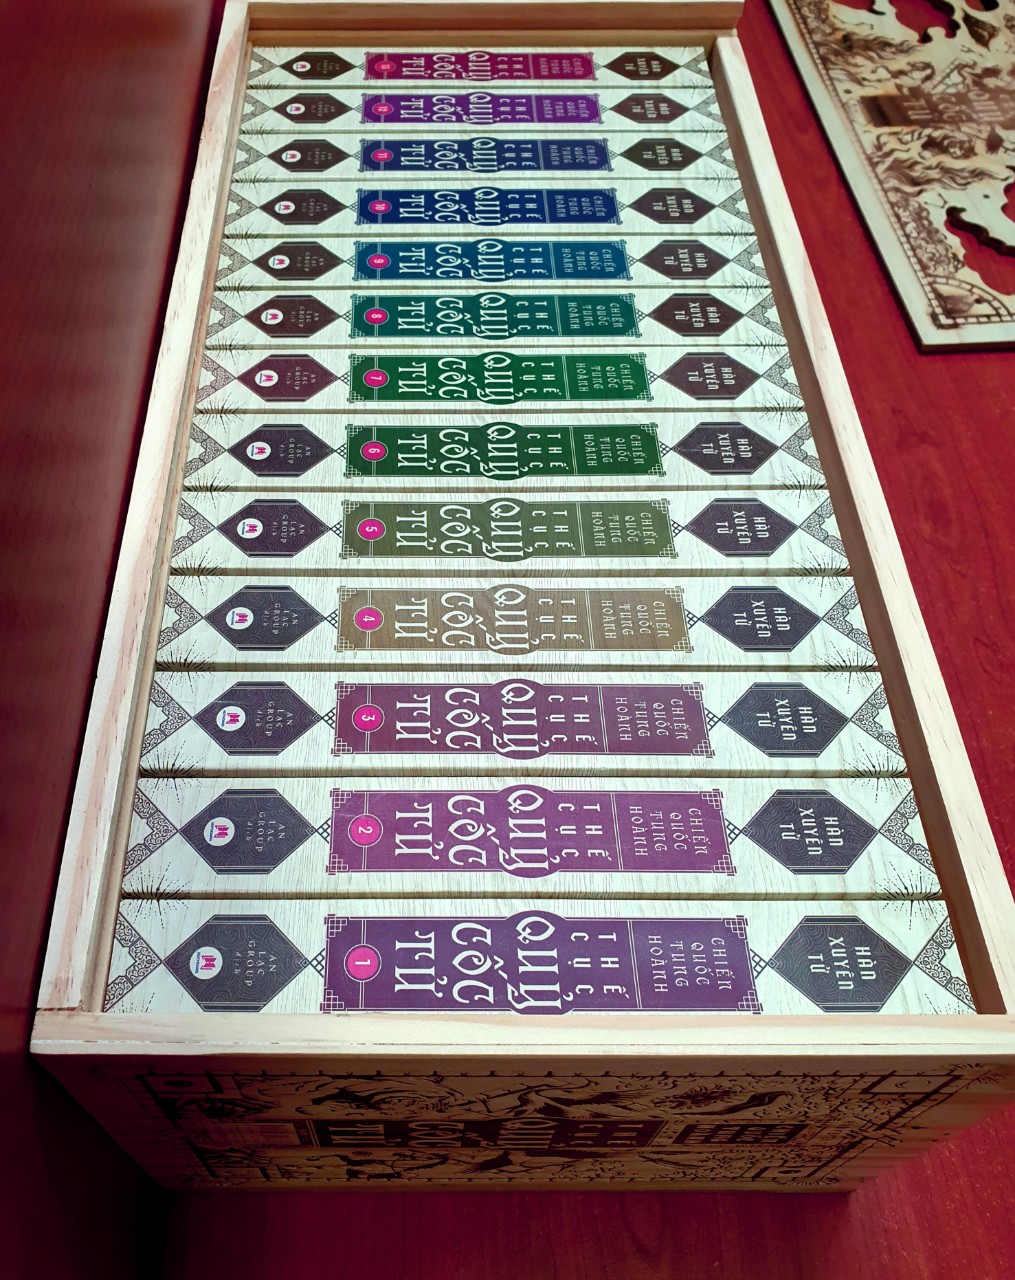 Boxset Chiến quốc tung hoành Thế cục Quỷ Cốc Tử - trọn bộ 13 cuốn hộp gỗ phiên bản giới hạn